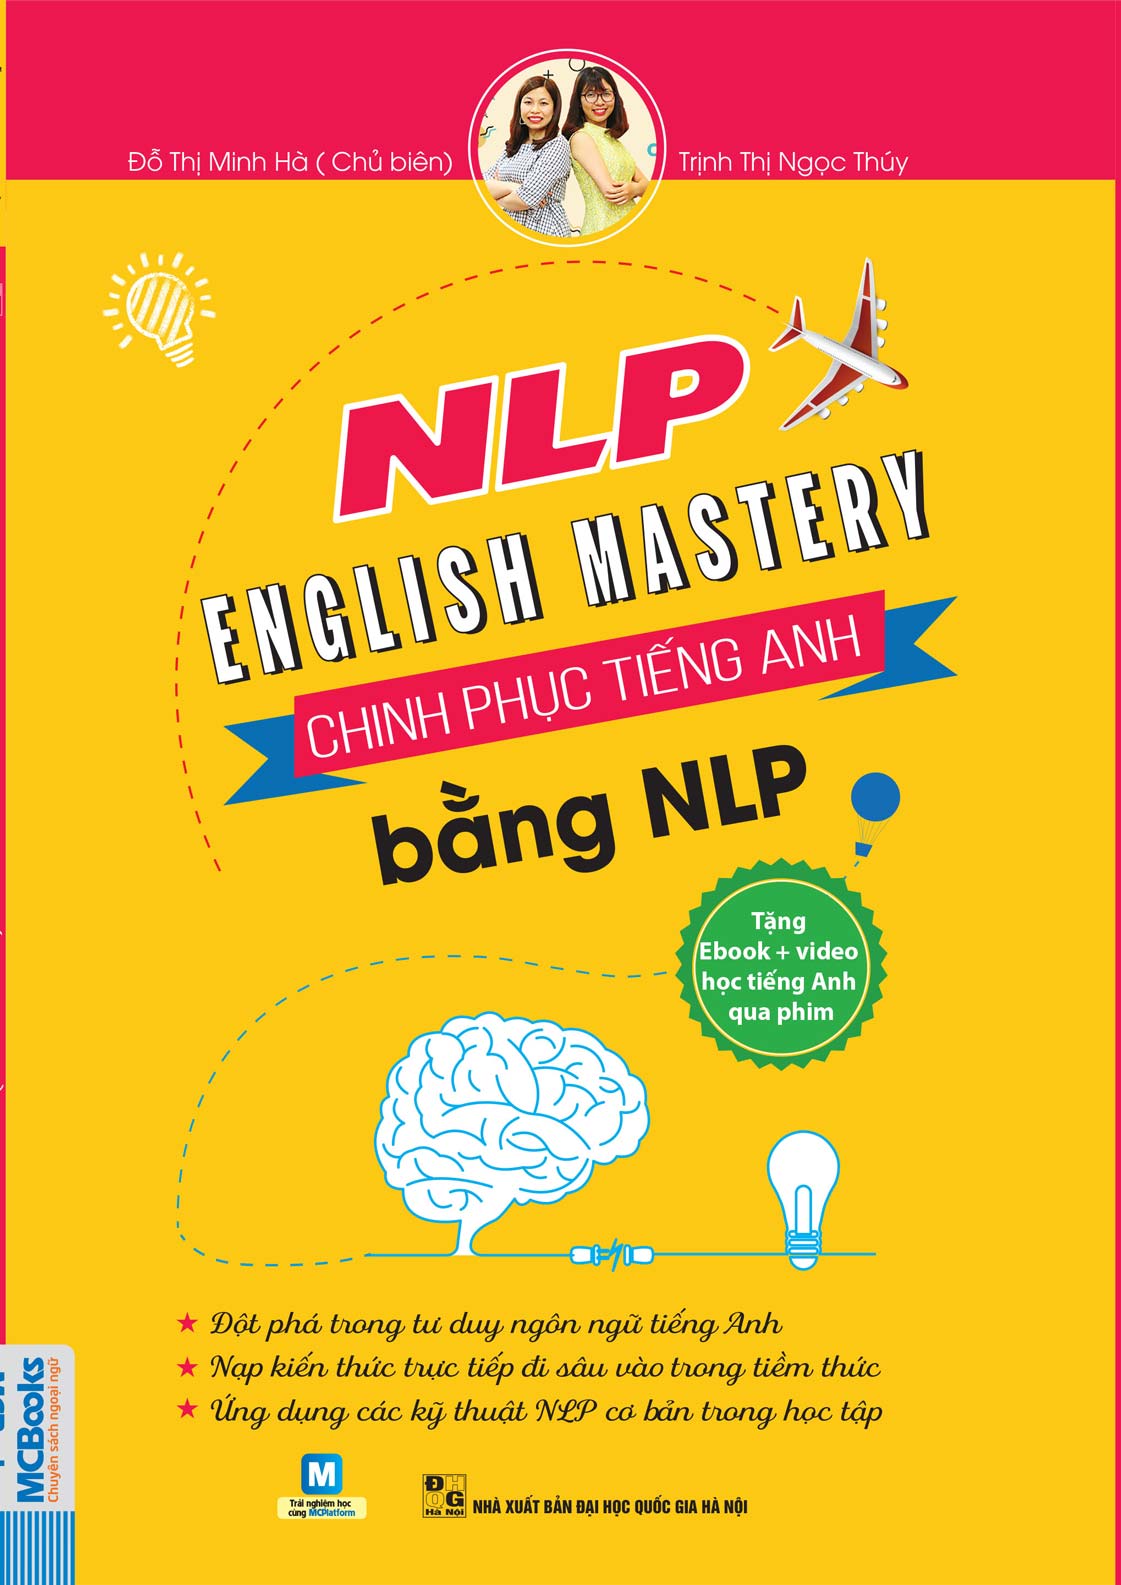 NLP English Mastery - Chinh Phục Tiếng Anh Bằng NLP